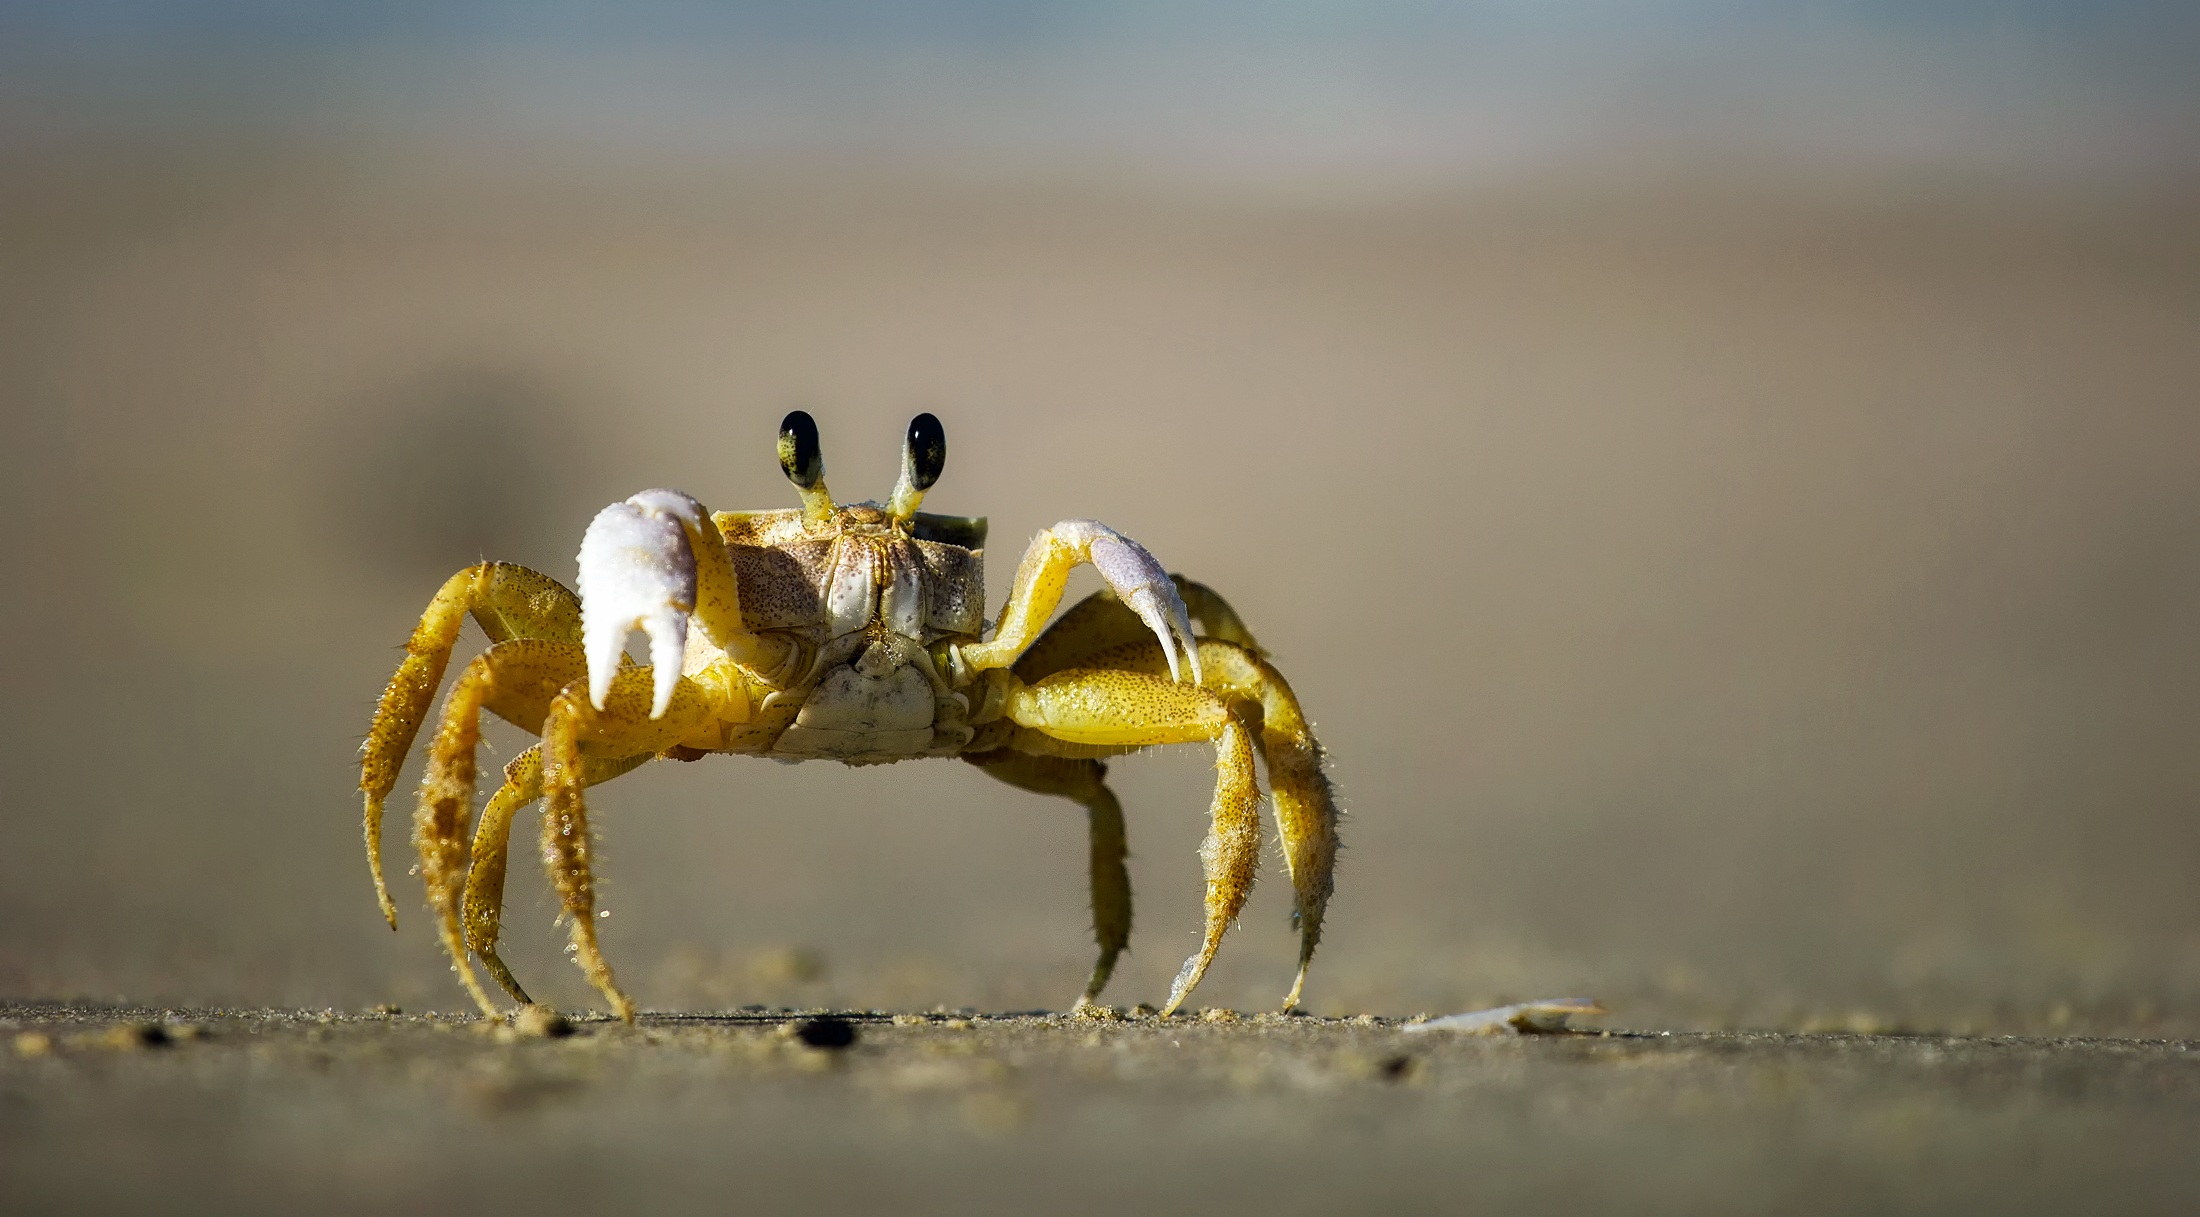 Crab Crustacean 2200x1217